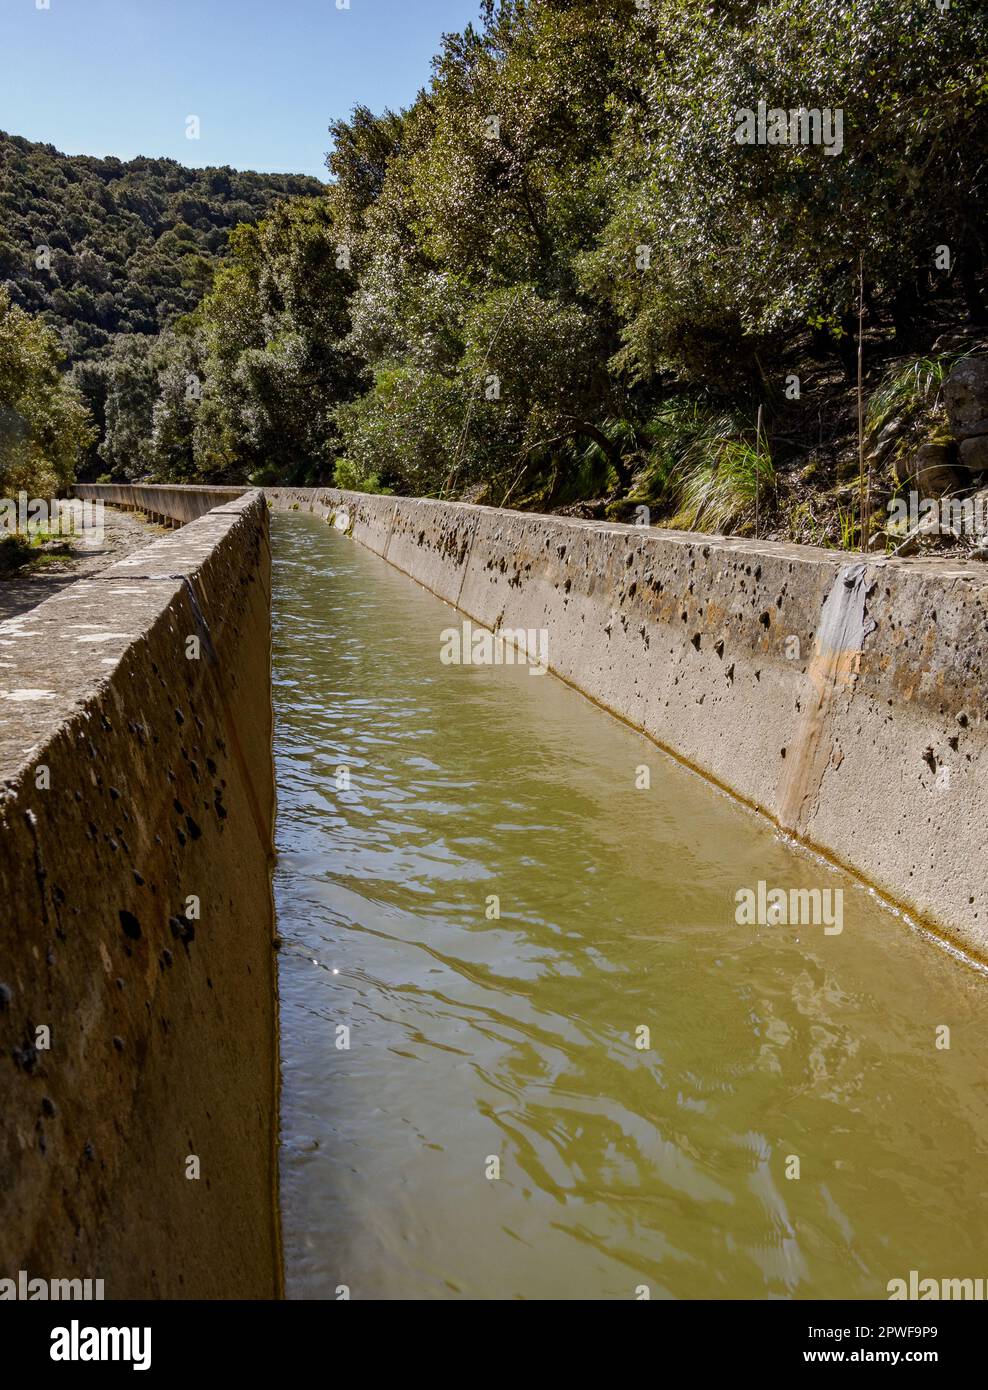 Le Canal des Embassaments un canal en béton alimentant en eau les réservoirs Cuber et Gorg Blau dans les montagnes de Tramuntana à Majorque en Espagne Banque D'Images